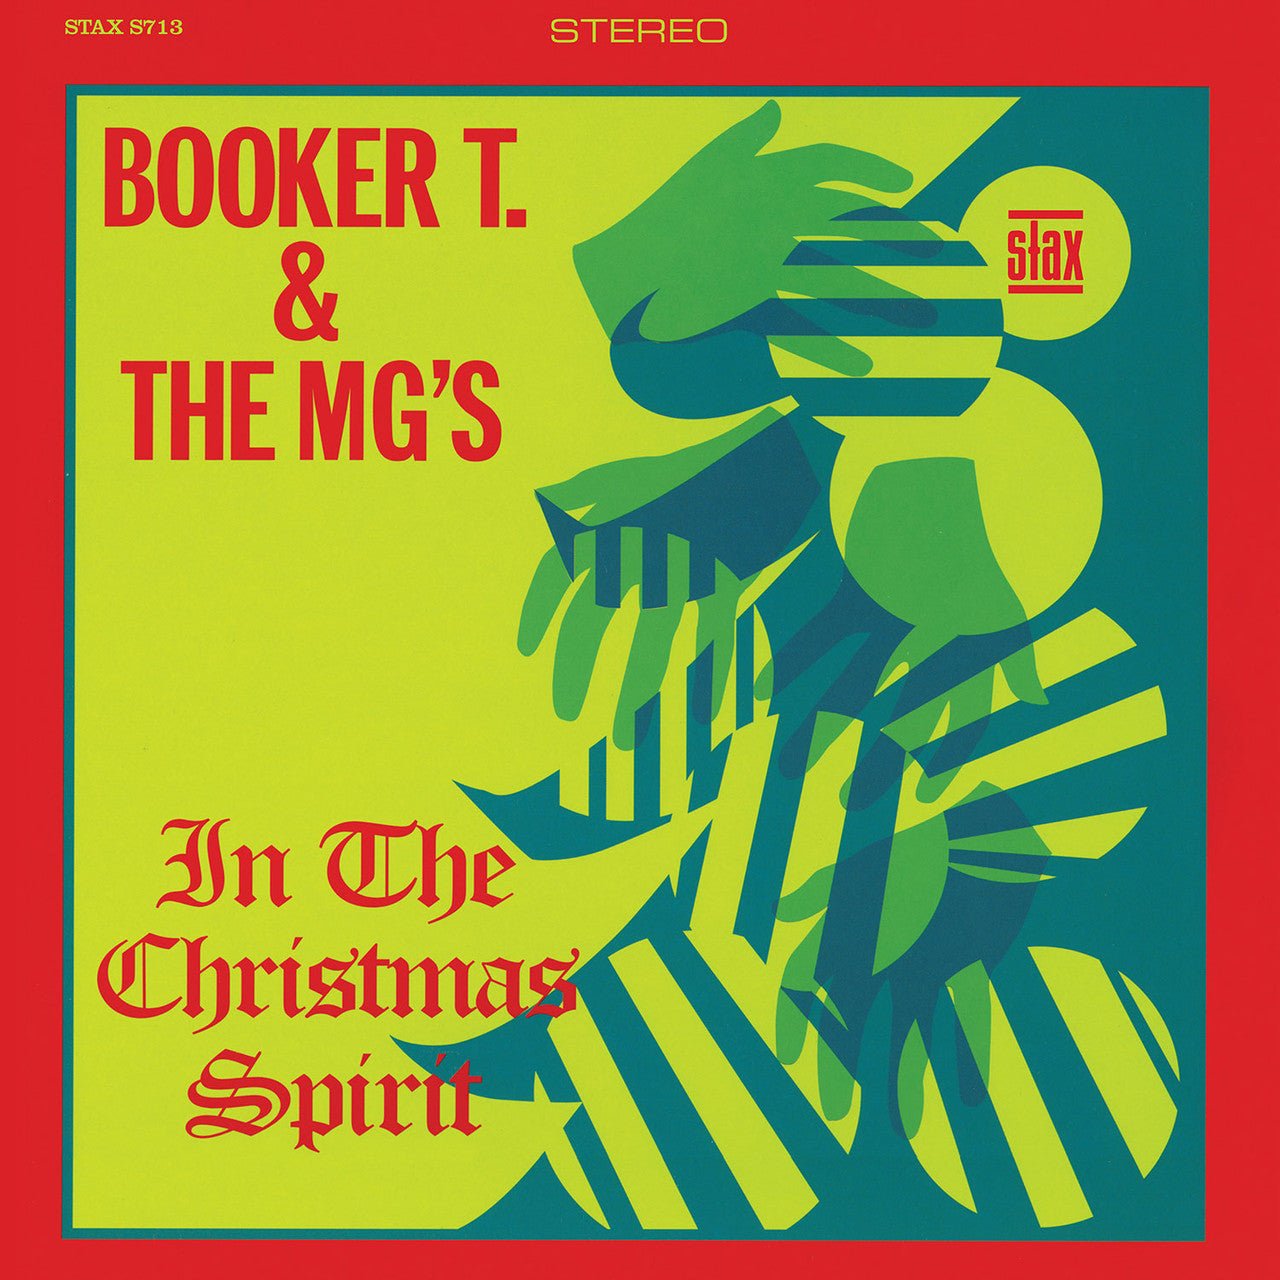 BOOKER T & MG'S - IN THE CHRISTMAS SPIRIT (CLEAR VINYL) (ATL75) Vinyl LP